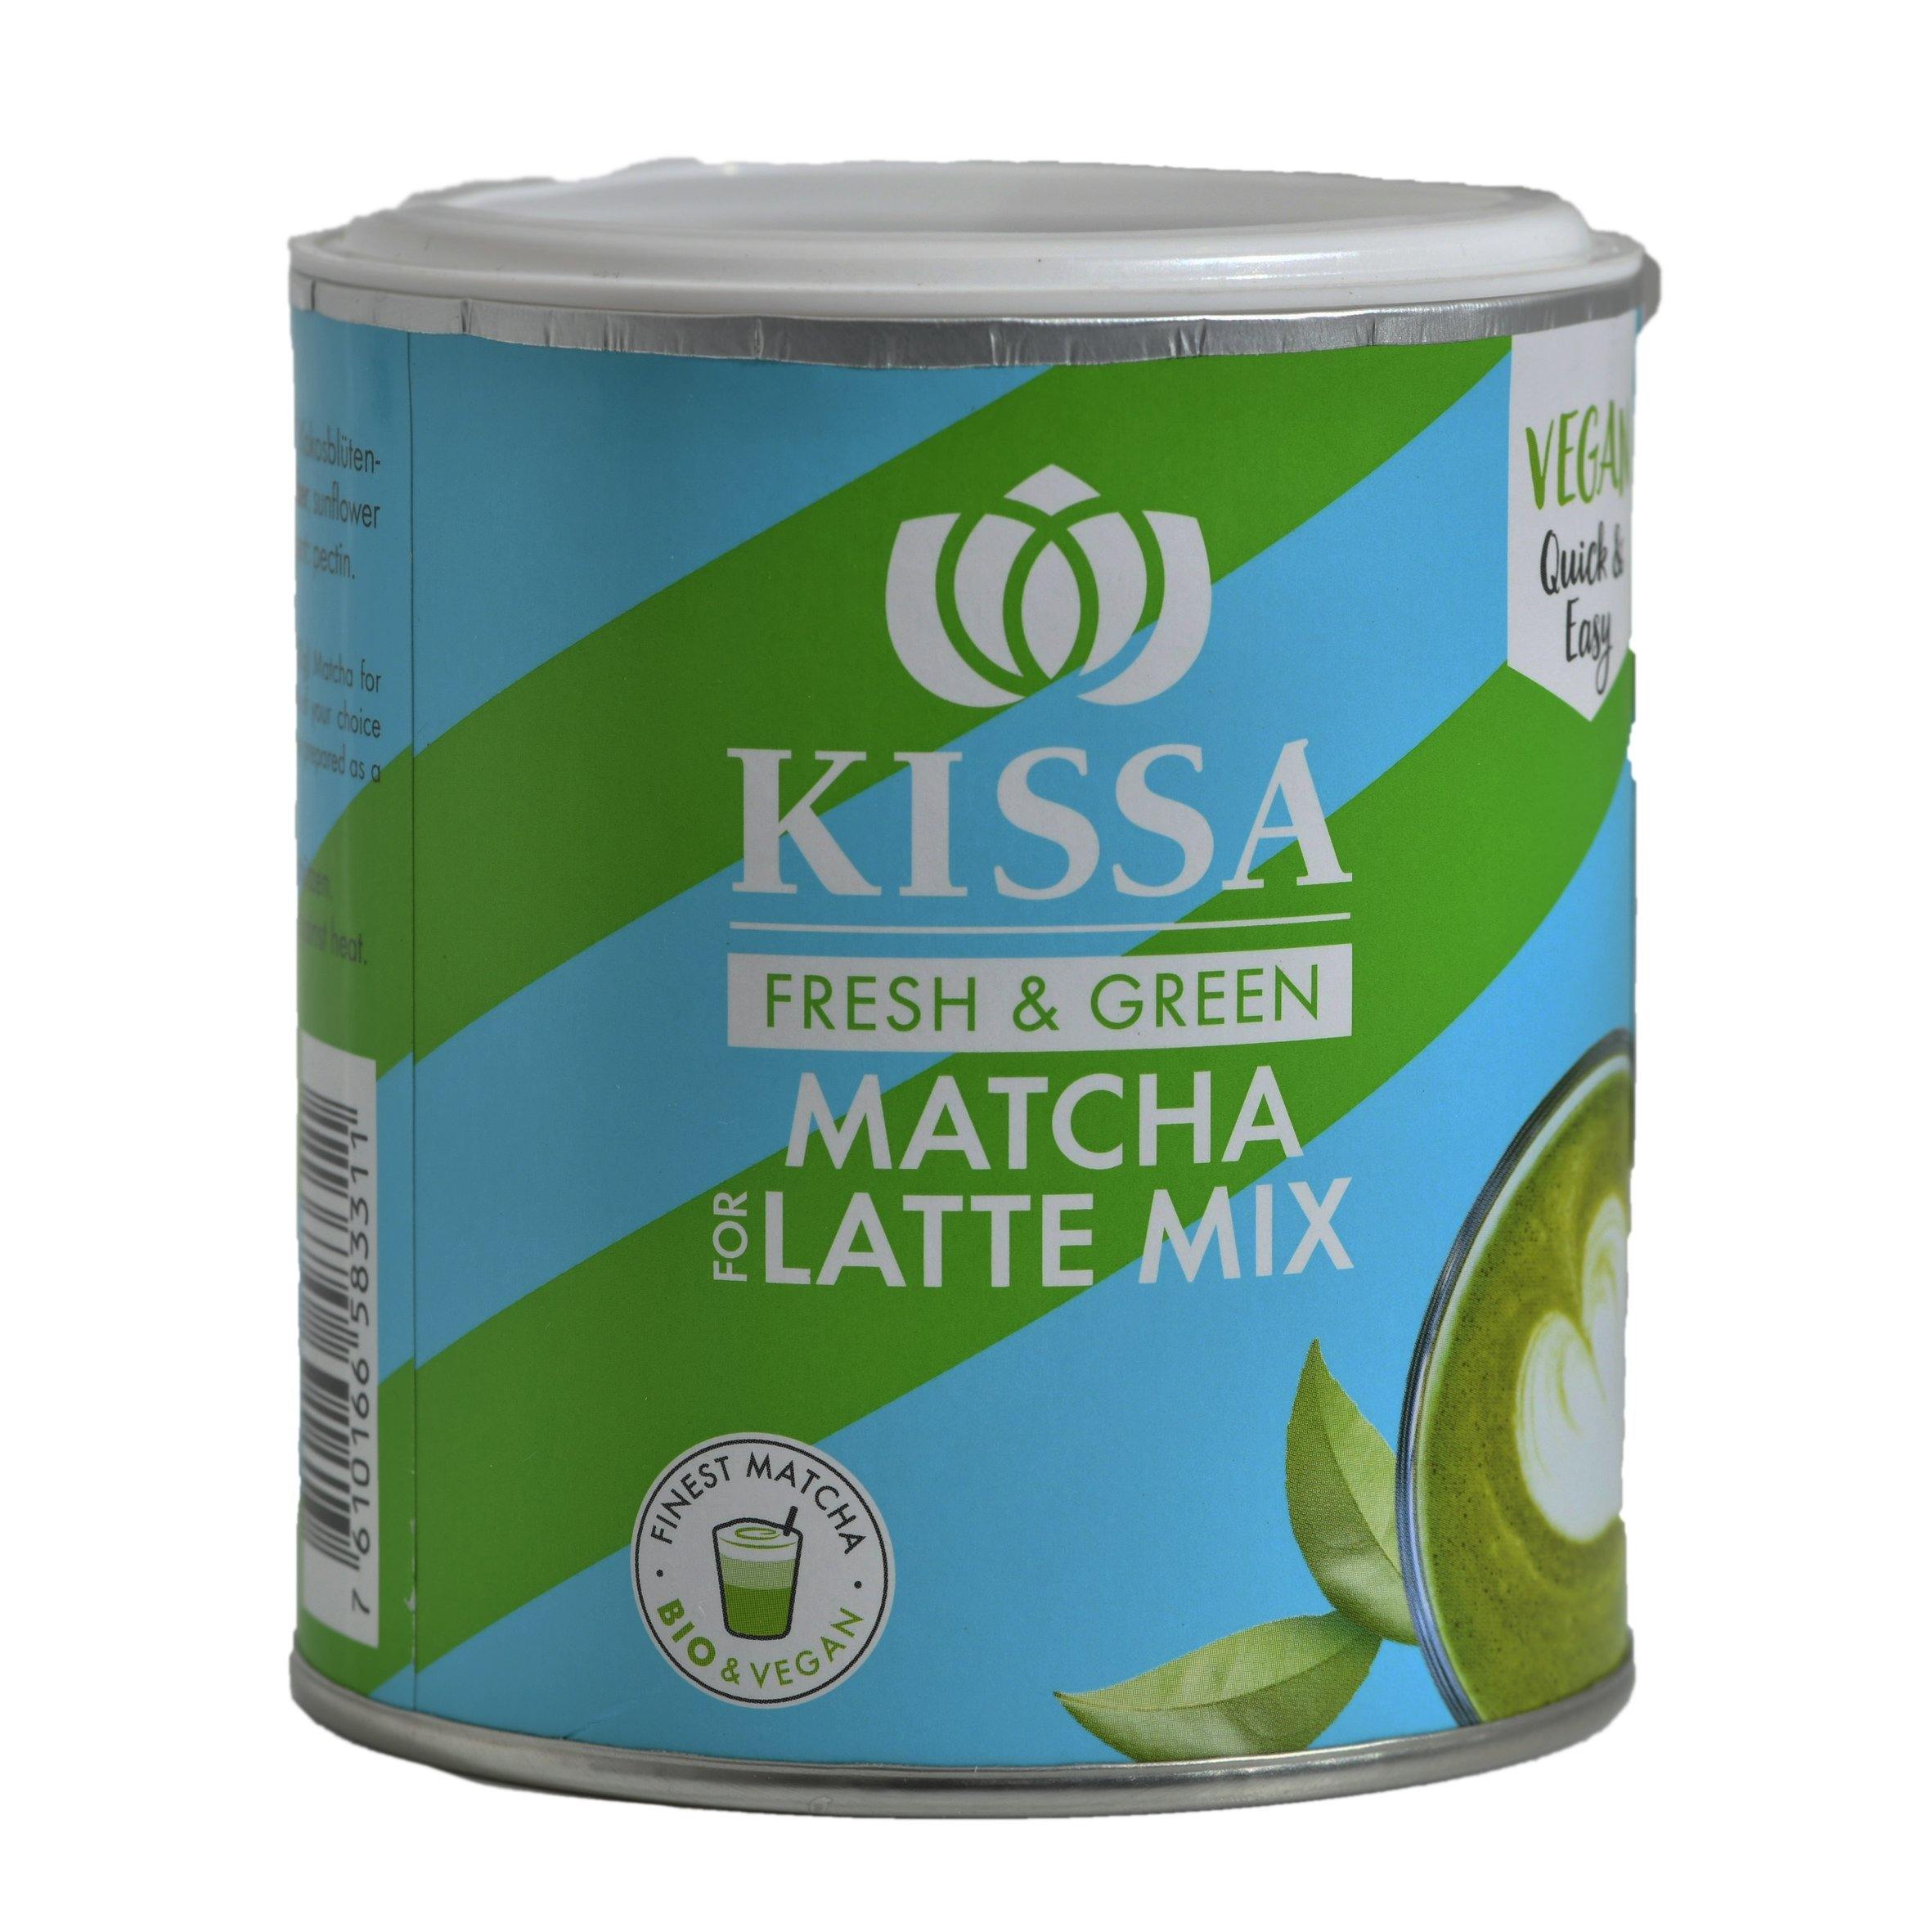 بودرة الشاي الأخضر ماتشا العضوي من كيسا - الغذاء الحيوي